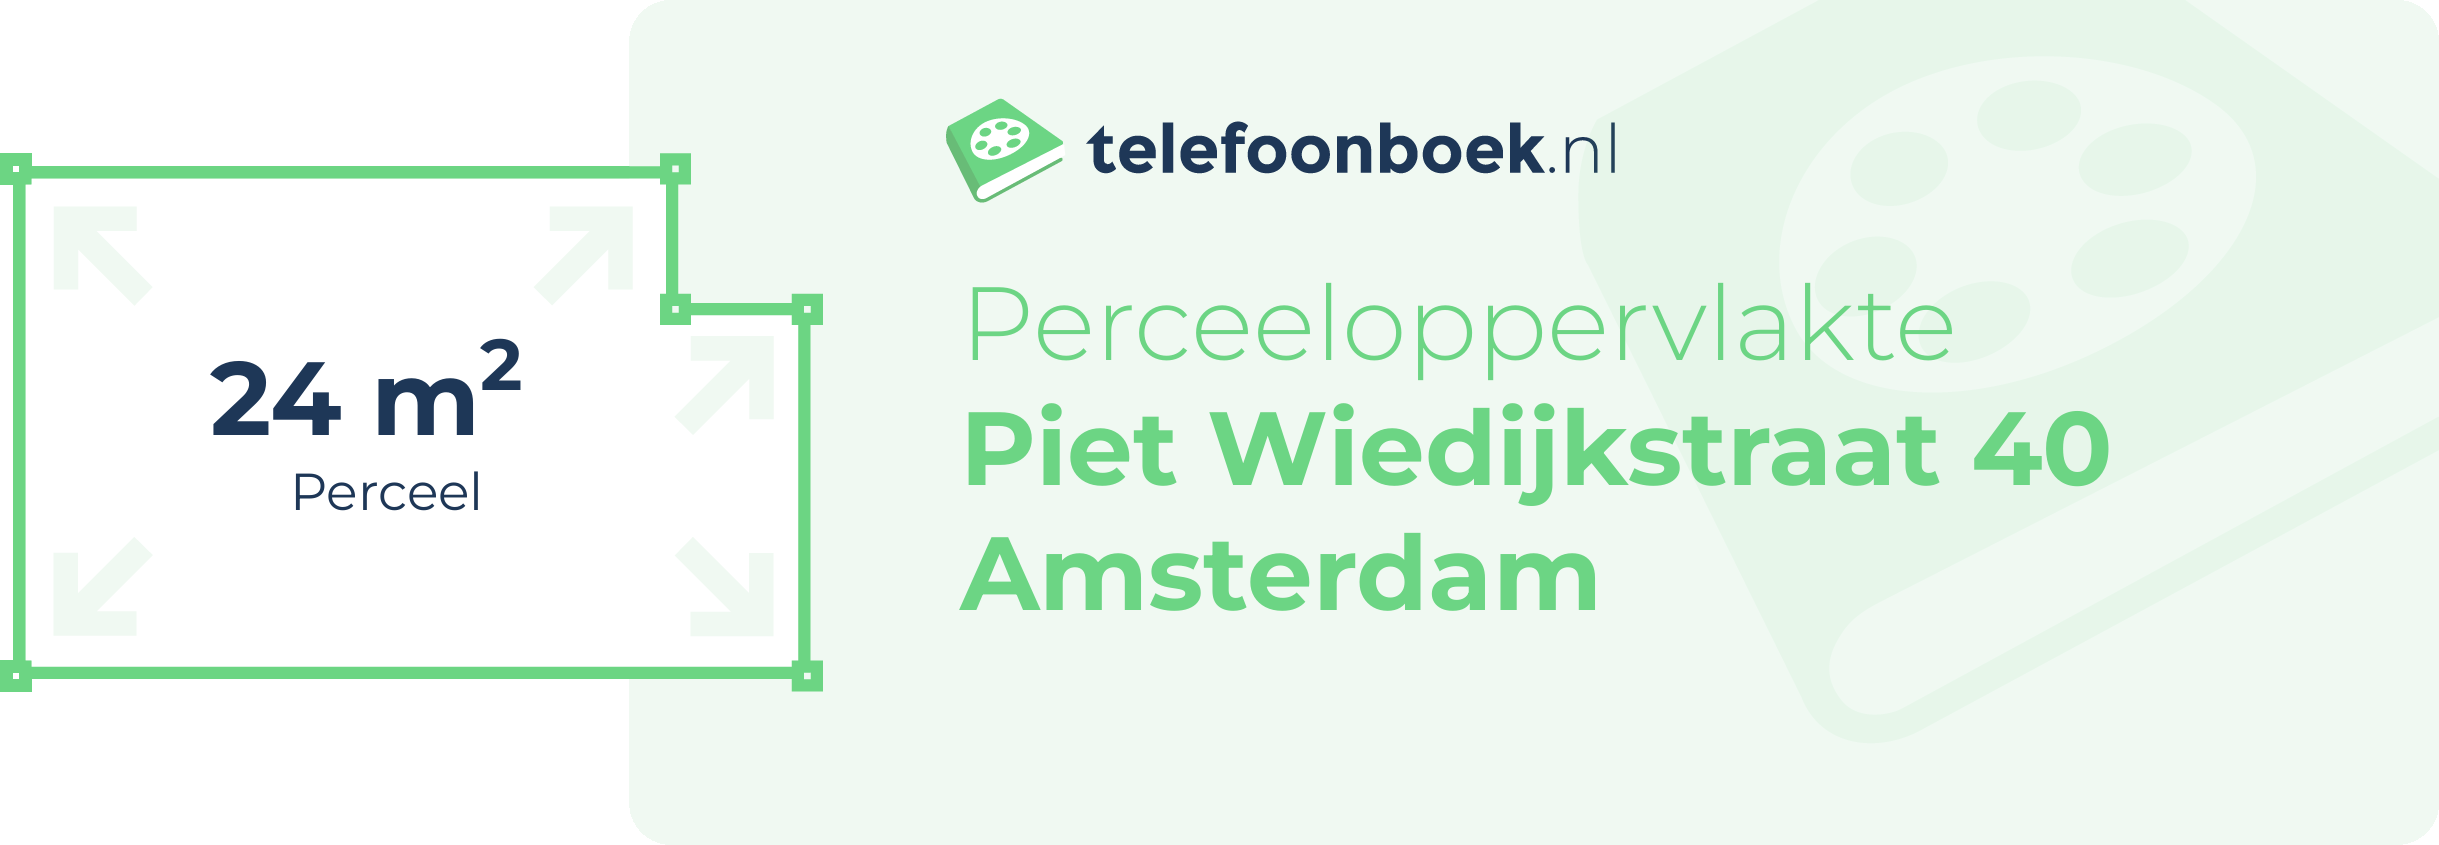 Perceeloppervlakte Piet Wiedijkstraat 40 Amsterdam